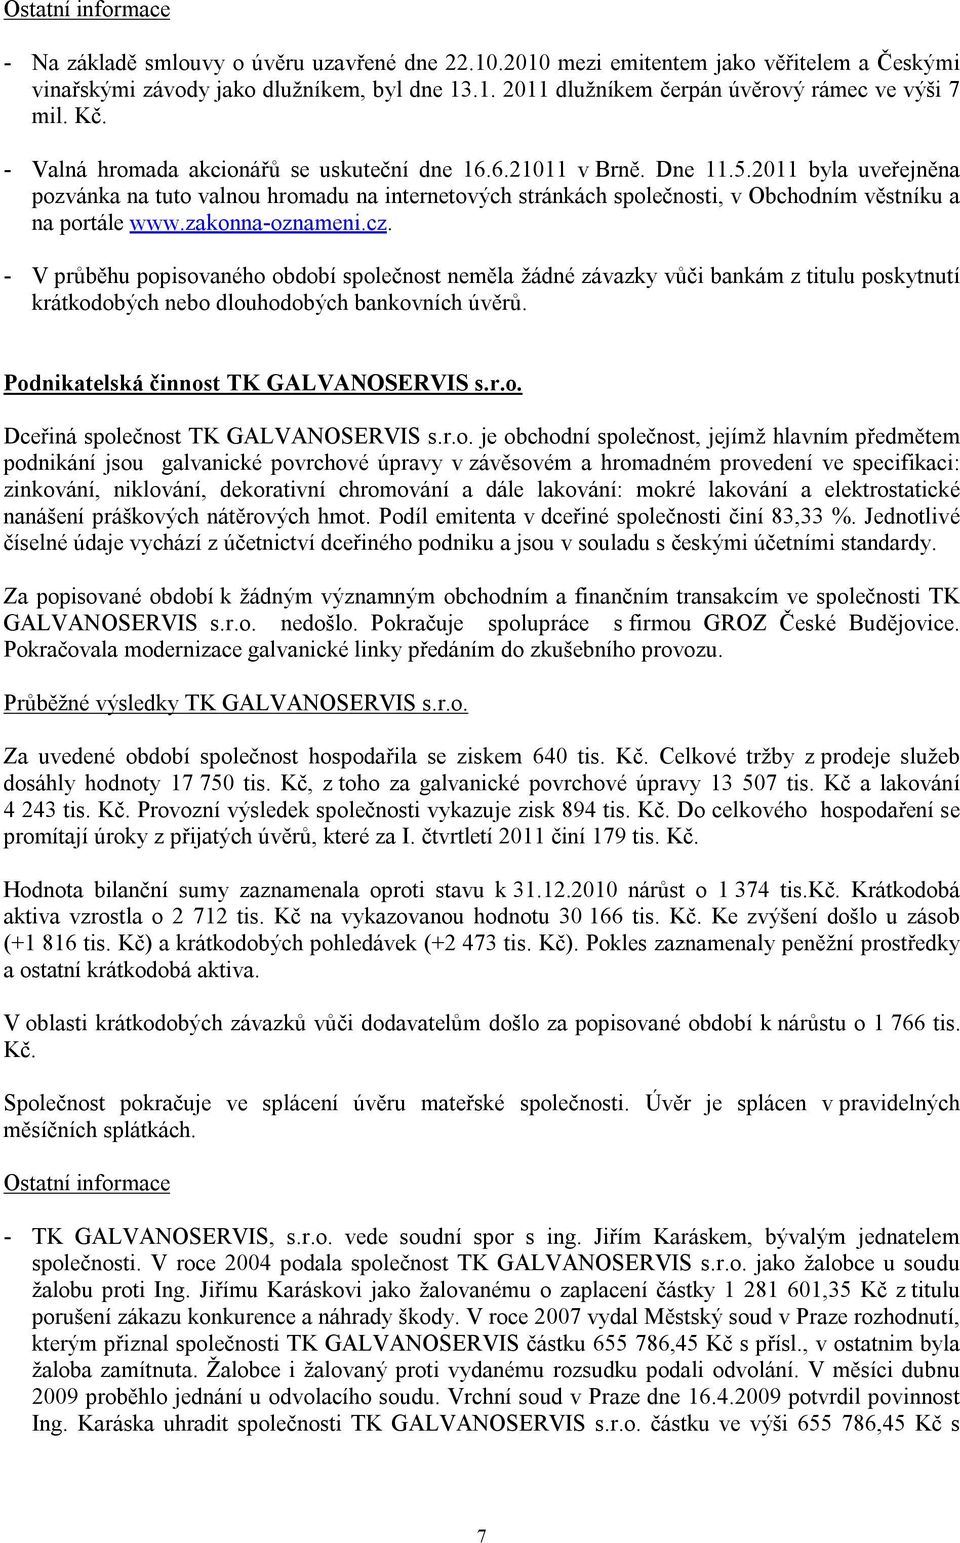 2011 byla uveřejněna pozvánka na tuto valnou hromadu na internetových stránkách společnosti, v Obchodním věstníku a na portále www.zakonna-oznameni.cz.